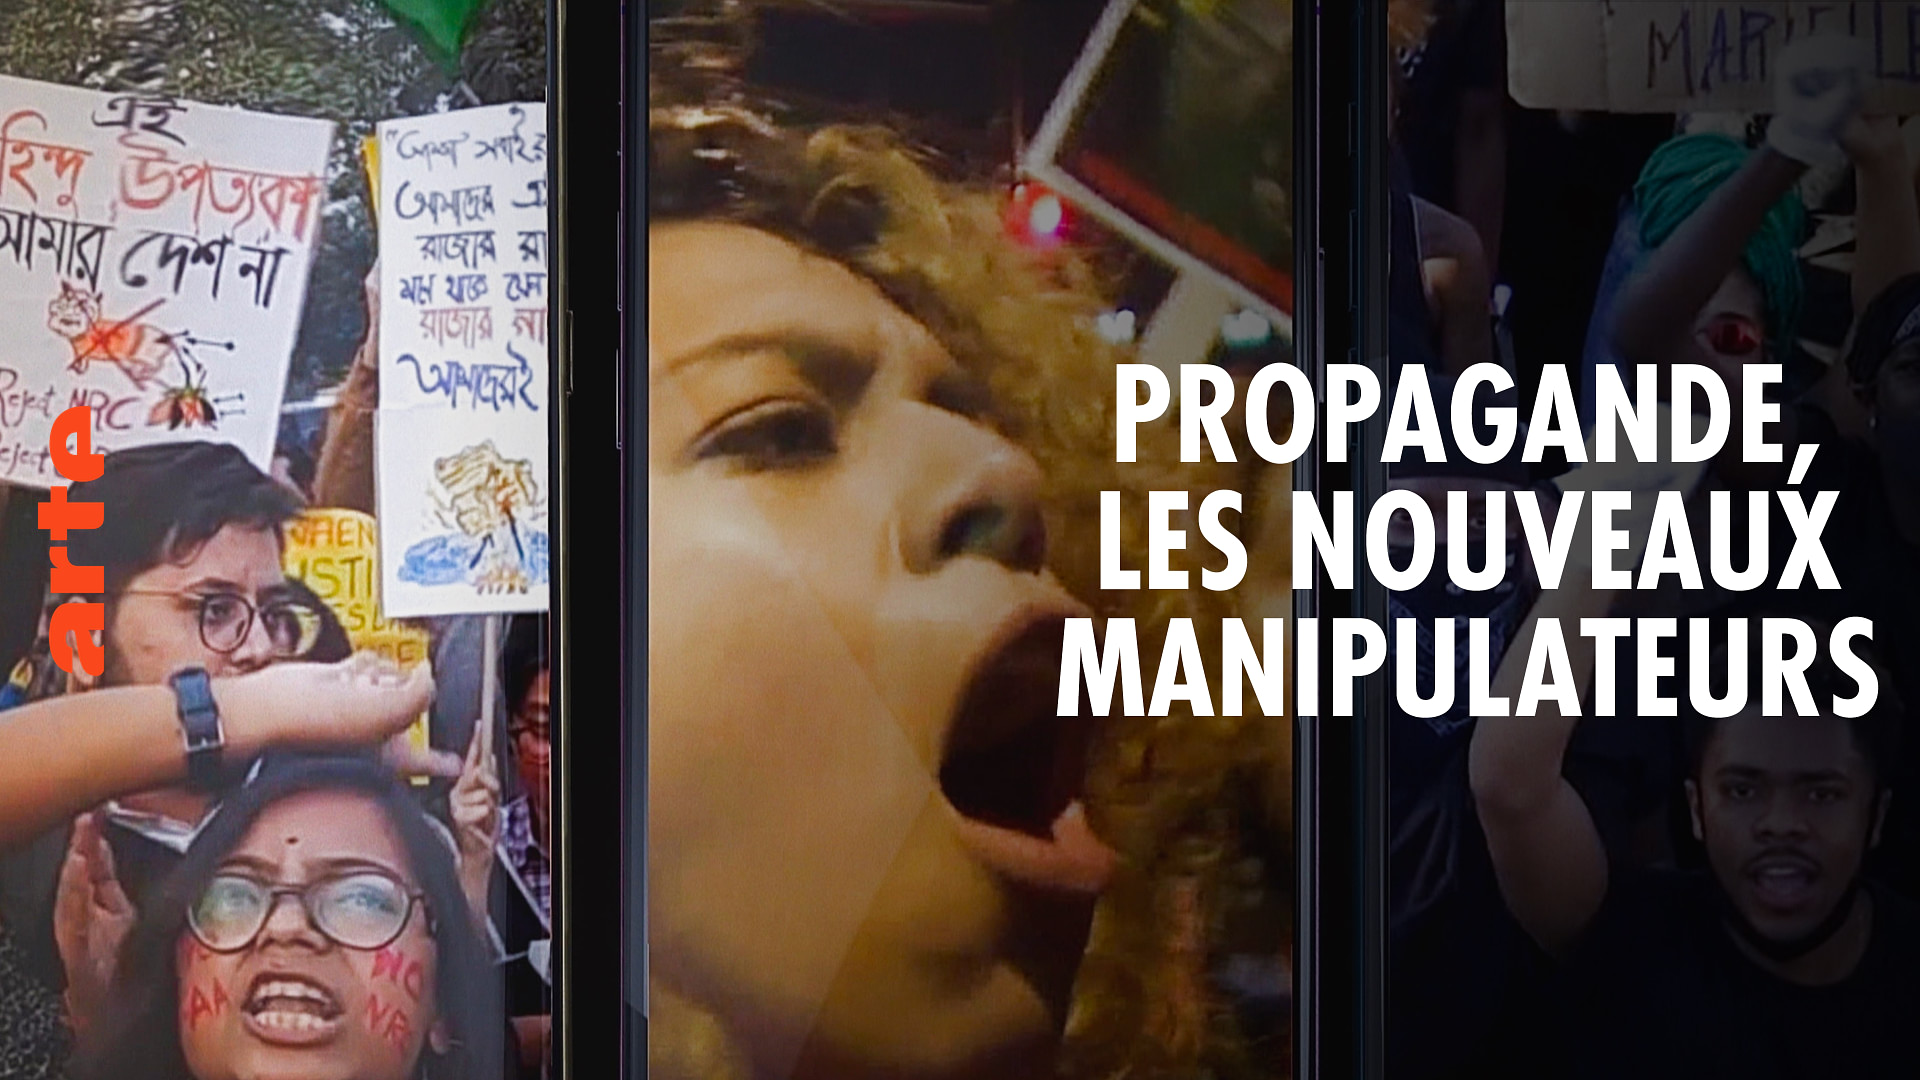 Propagande, les nouveaux manipulateurs - Regarder le documentaire complet | ARTE